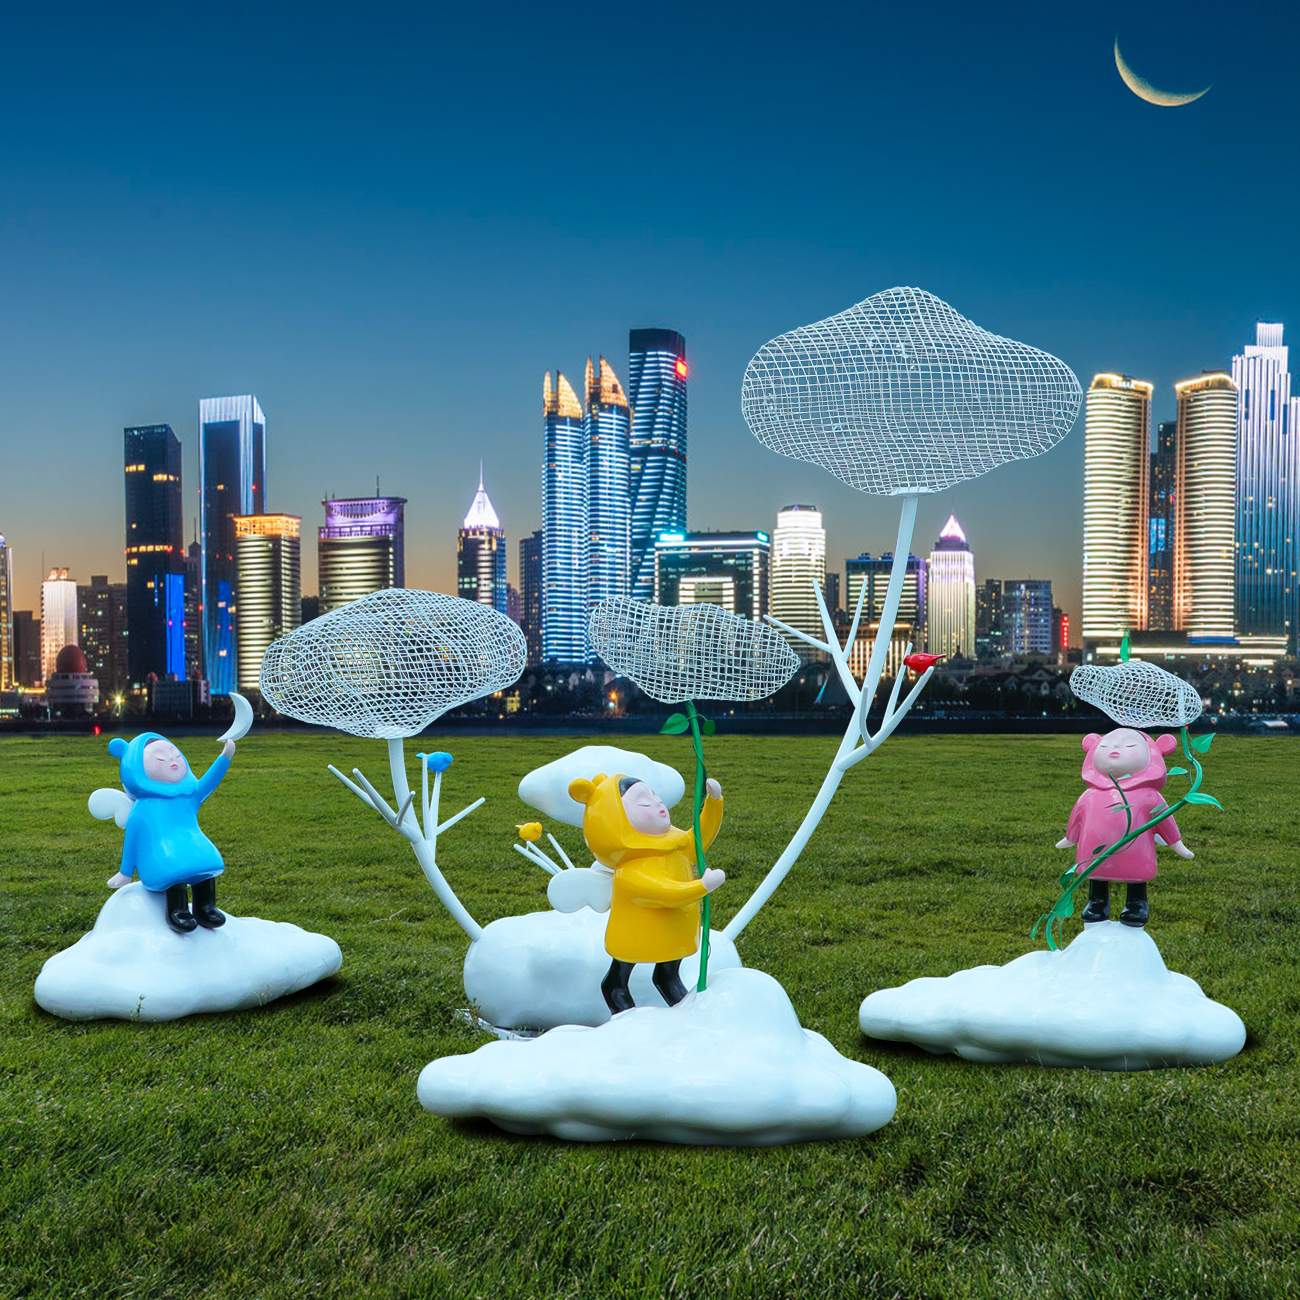 卡通天使童趣幼儿游乐园玻璃钢摆件户外不锈钢镂空云朵雕塑装饰品